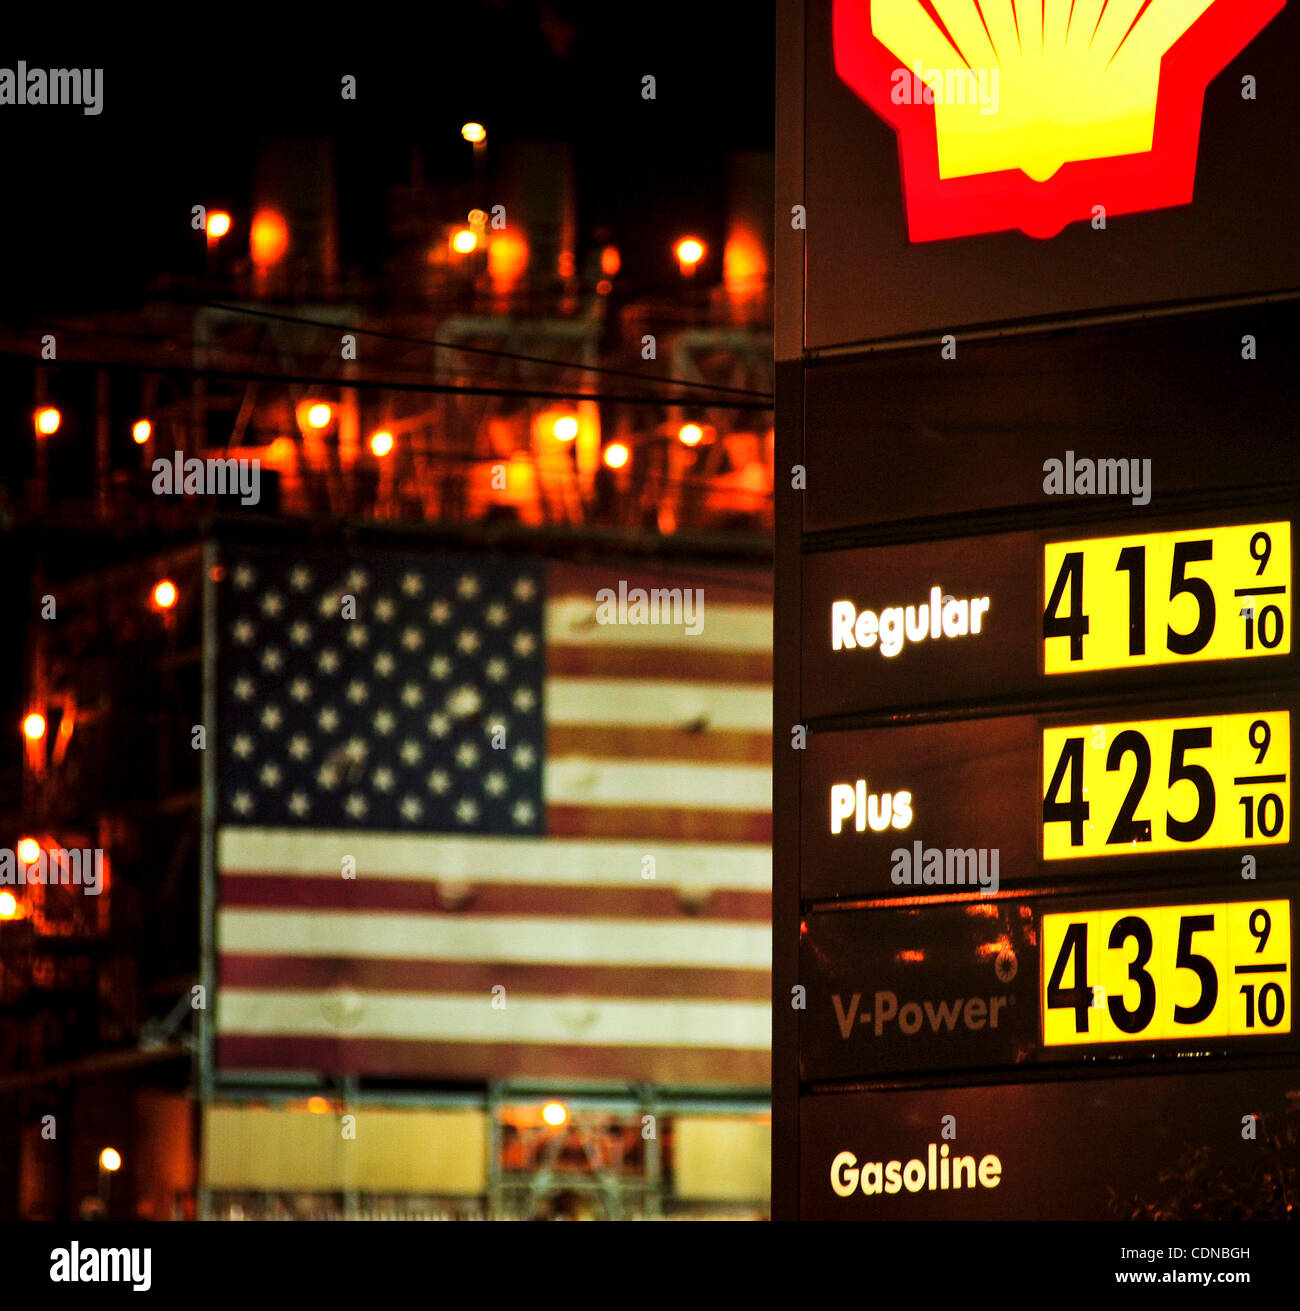 19 mai 2011 - Carson, Californie, États-Unis - le prix du gaz est vu à une station-service Shell près de la raffinerie de pétrole de BP dans la région de Carson, Californie, 19 mai 2011. Le prix moyen d'un gallon d'essence a baissé plus que $.40 ce mois, et peuvent continuer à l'automne. (Crédit Image : © Josh Edelson/ZUMAPRESS.com) Banque D'Images